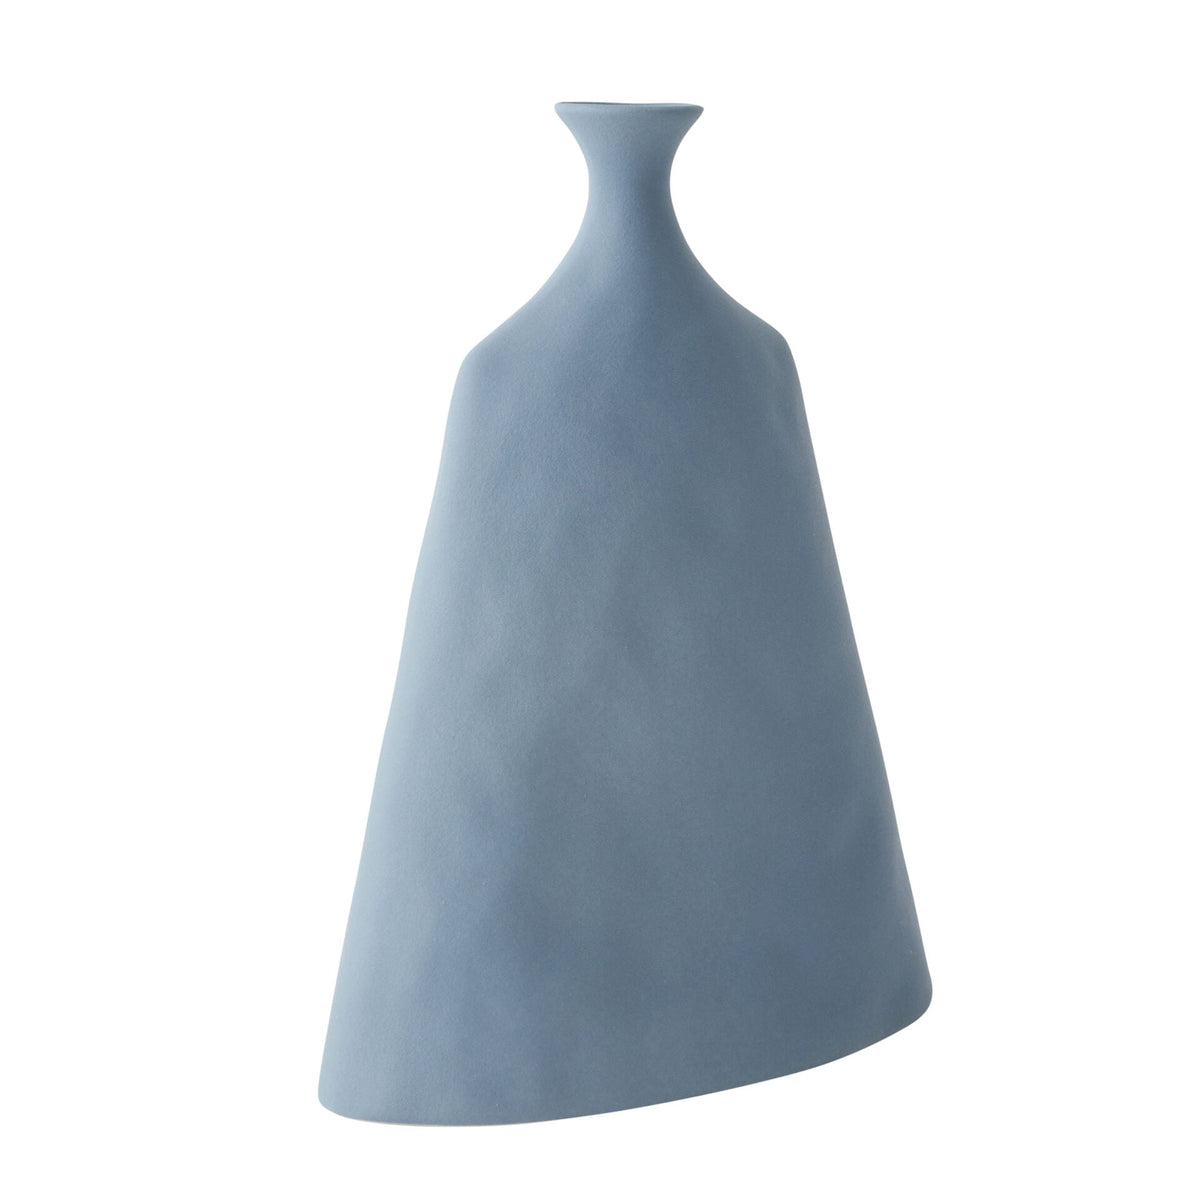 Alice Ceramic Vase in Blue - 26cm